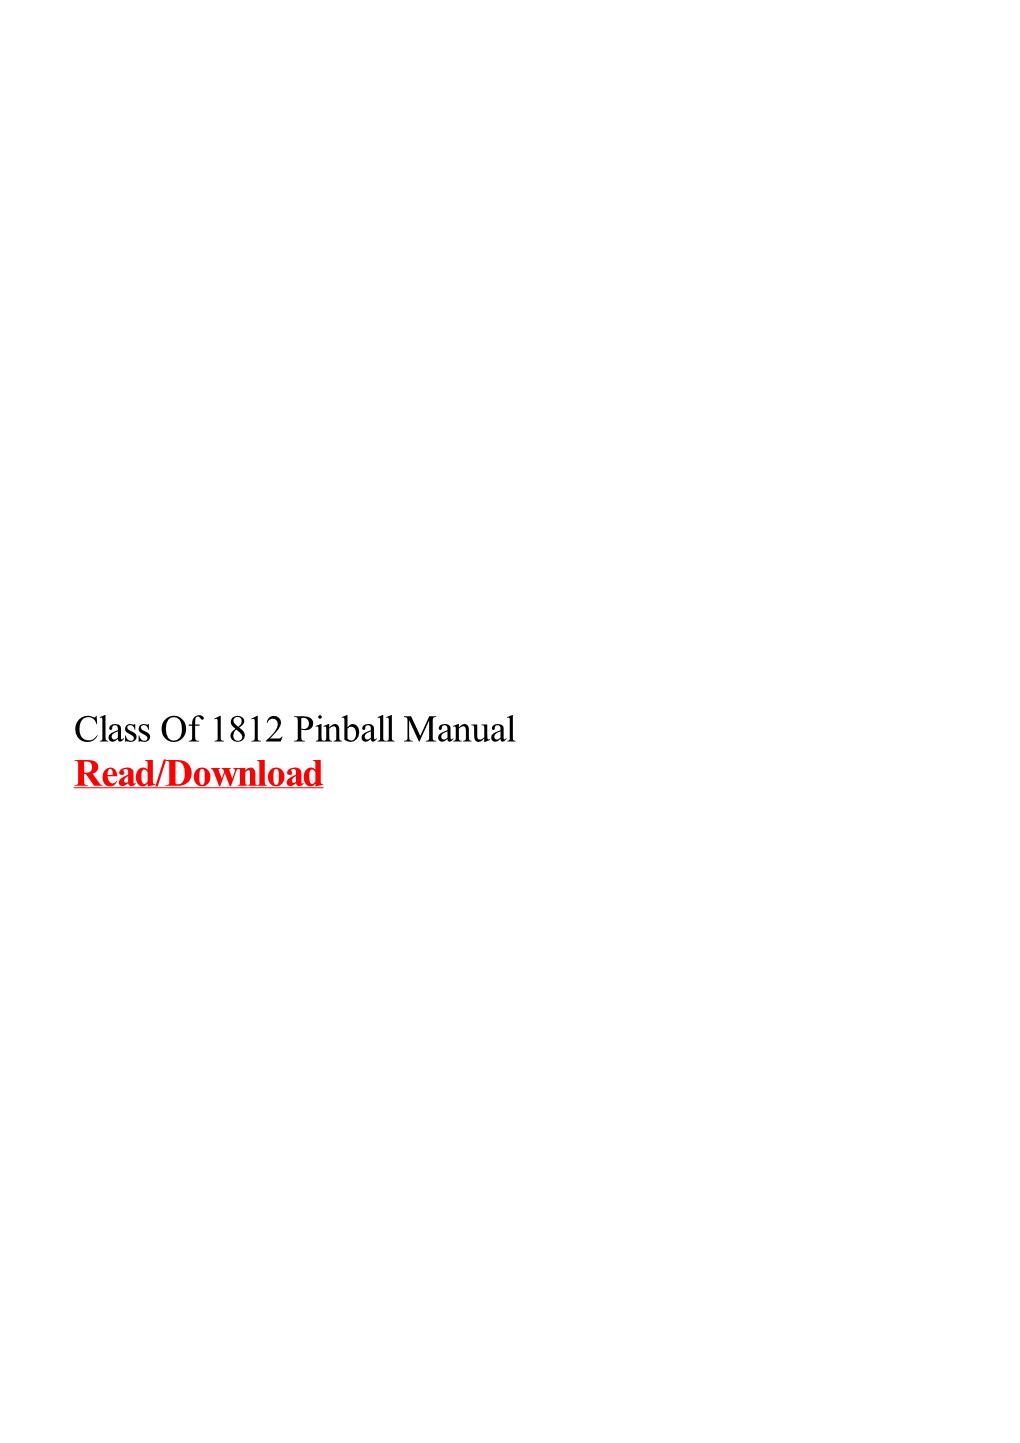 Class of 1812 Pinball Manual